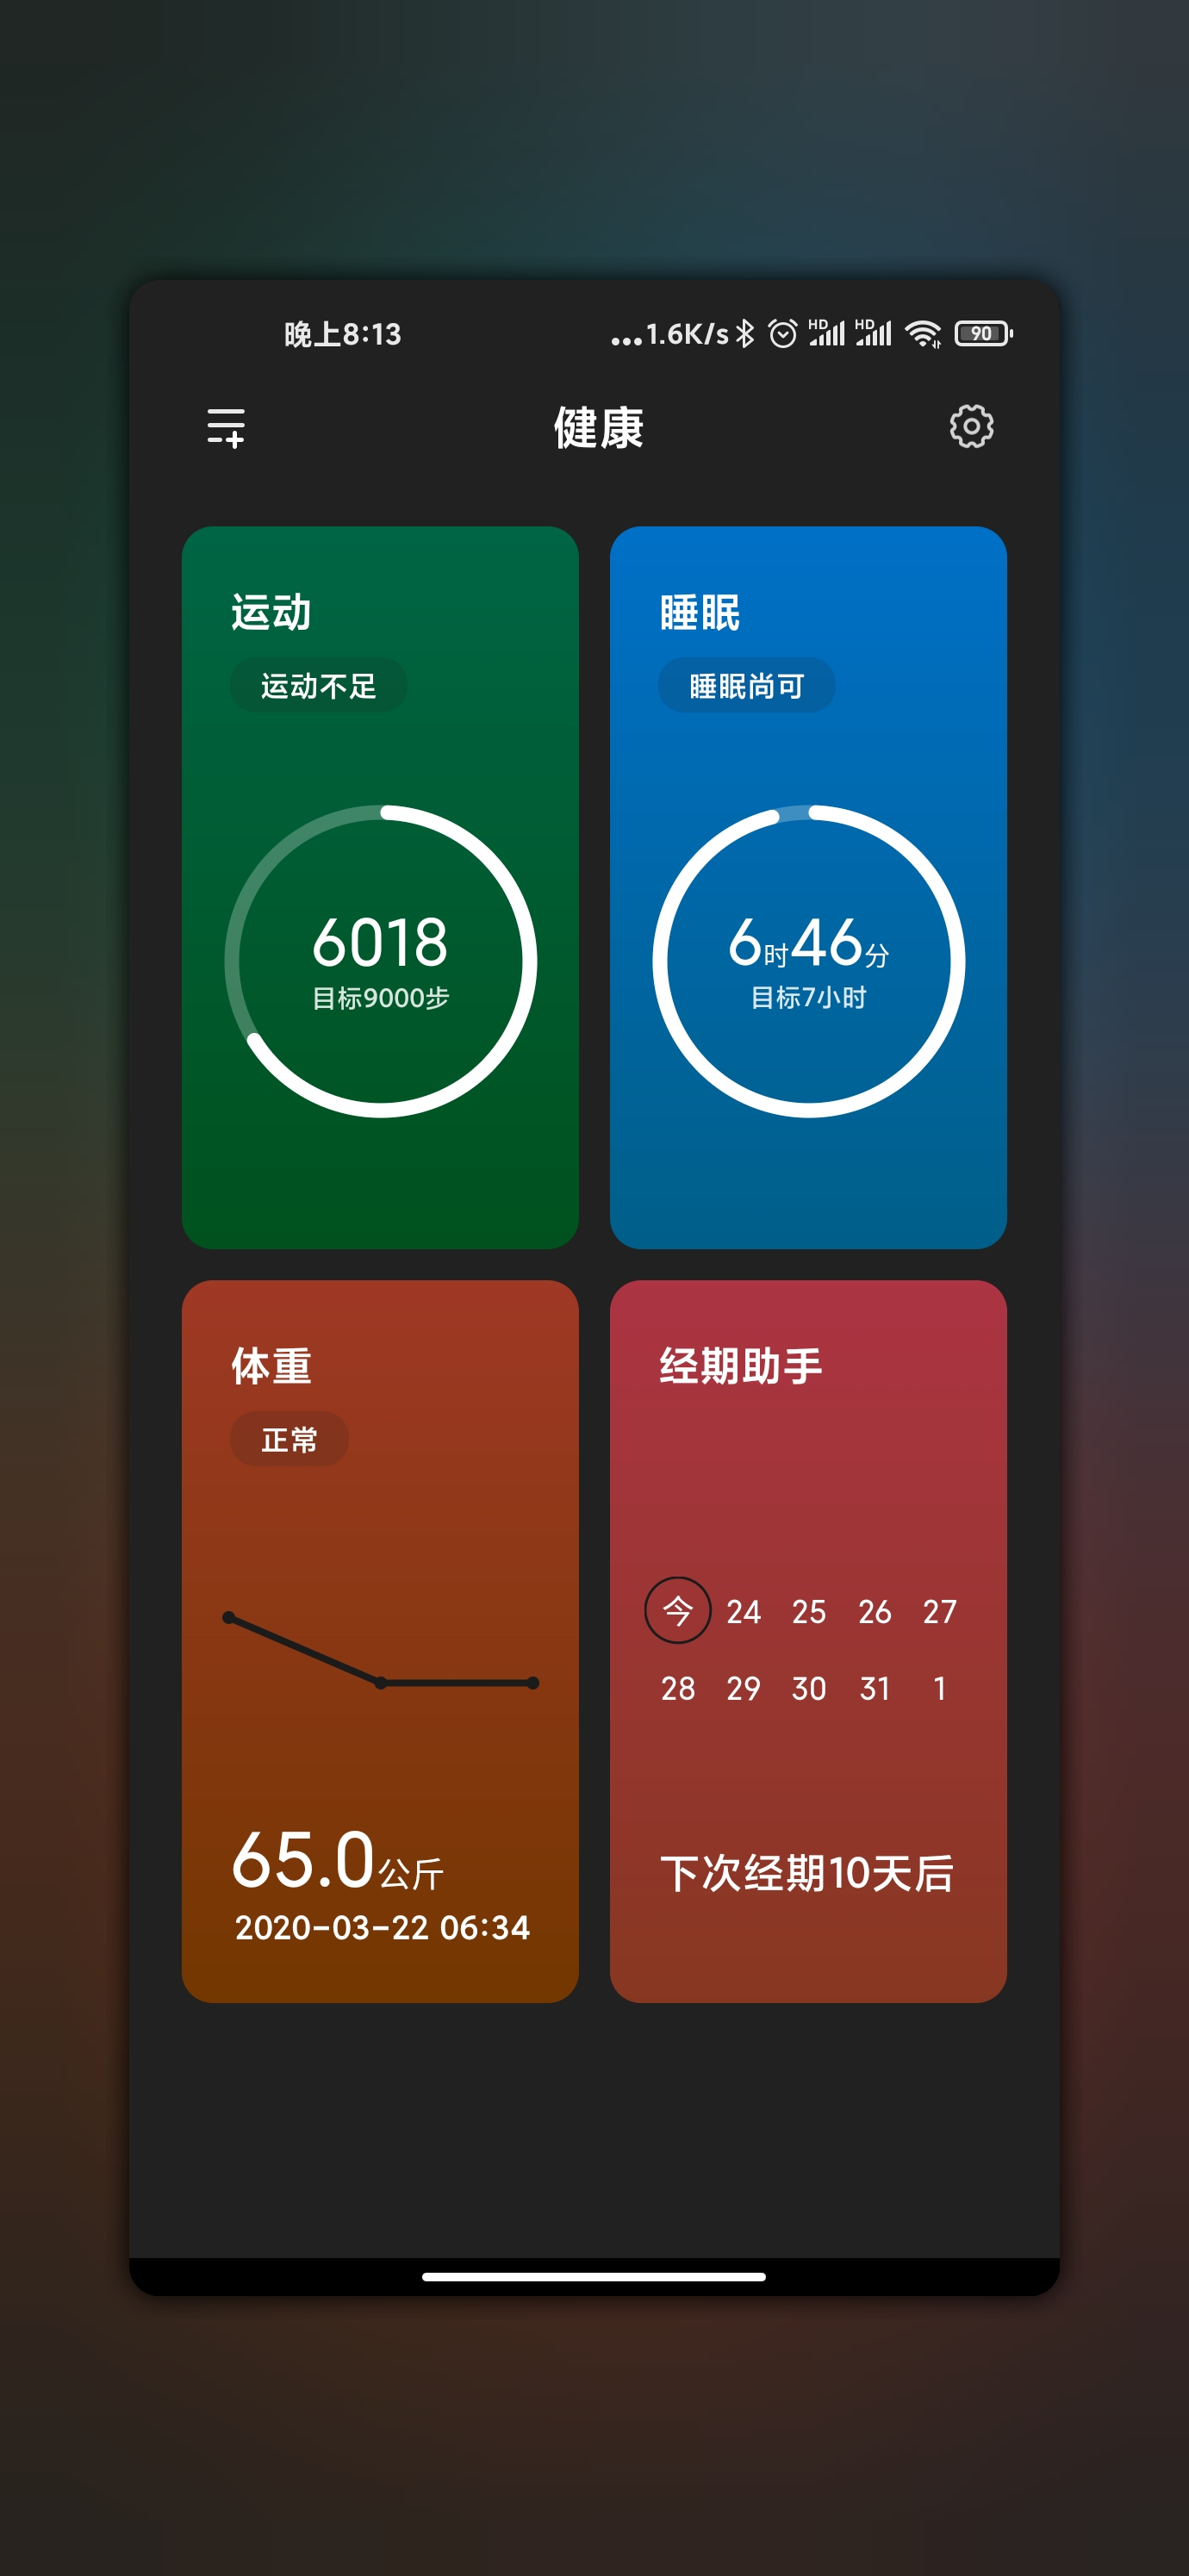 Les prochaines fonctionnalités MIUI 12 de Xiaomi sont attendues 8